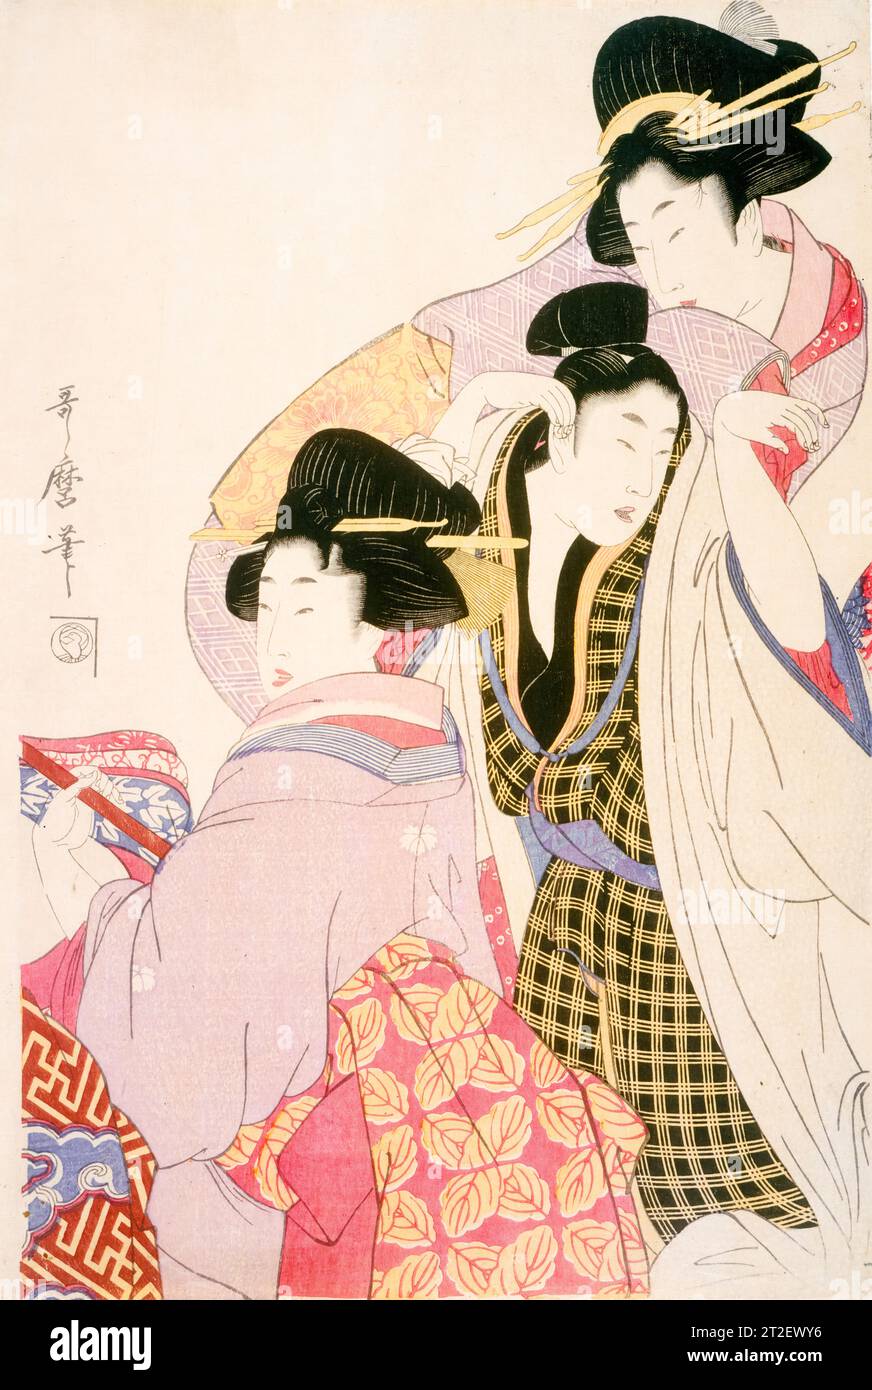 Kitagawa Utamaro, deux Geishas et un Tipsy client, gravure sur bois à l'encre et couleur sur papier, vers 1805 Banque D'Images